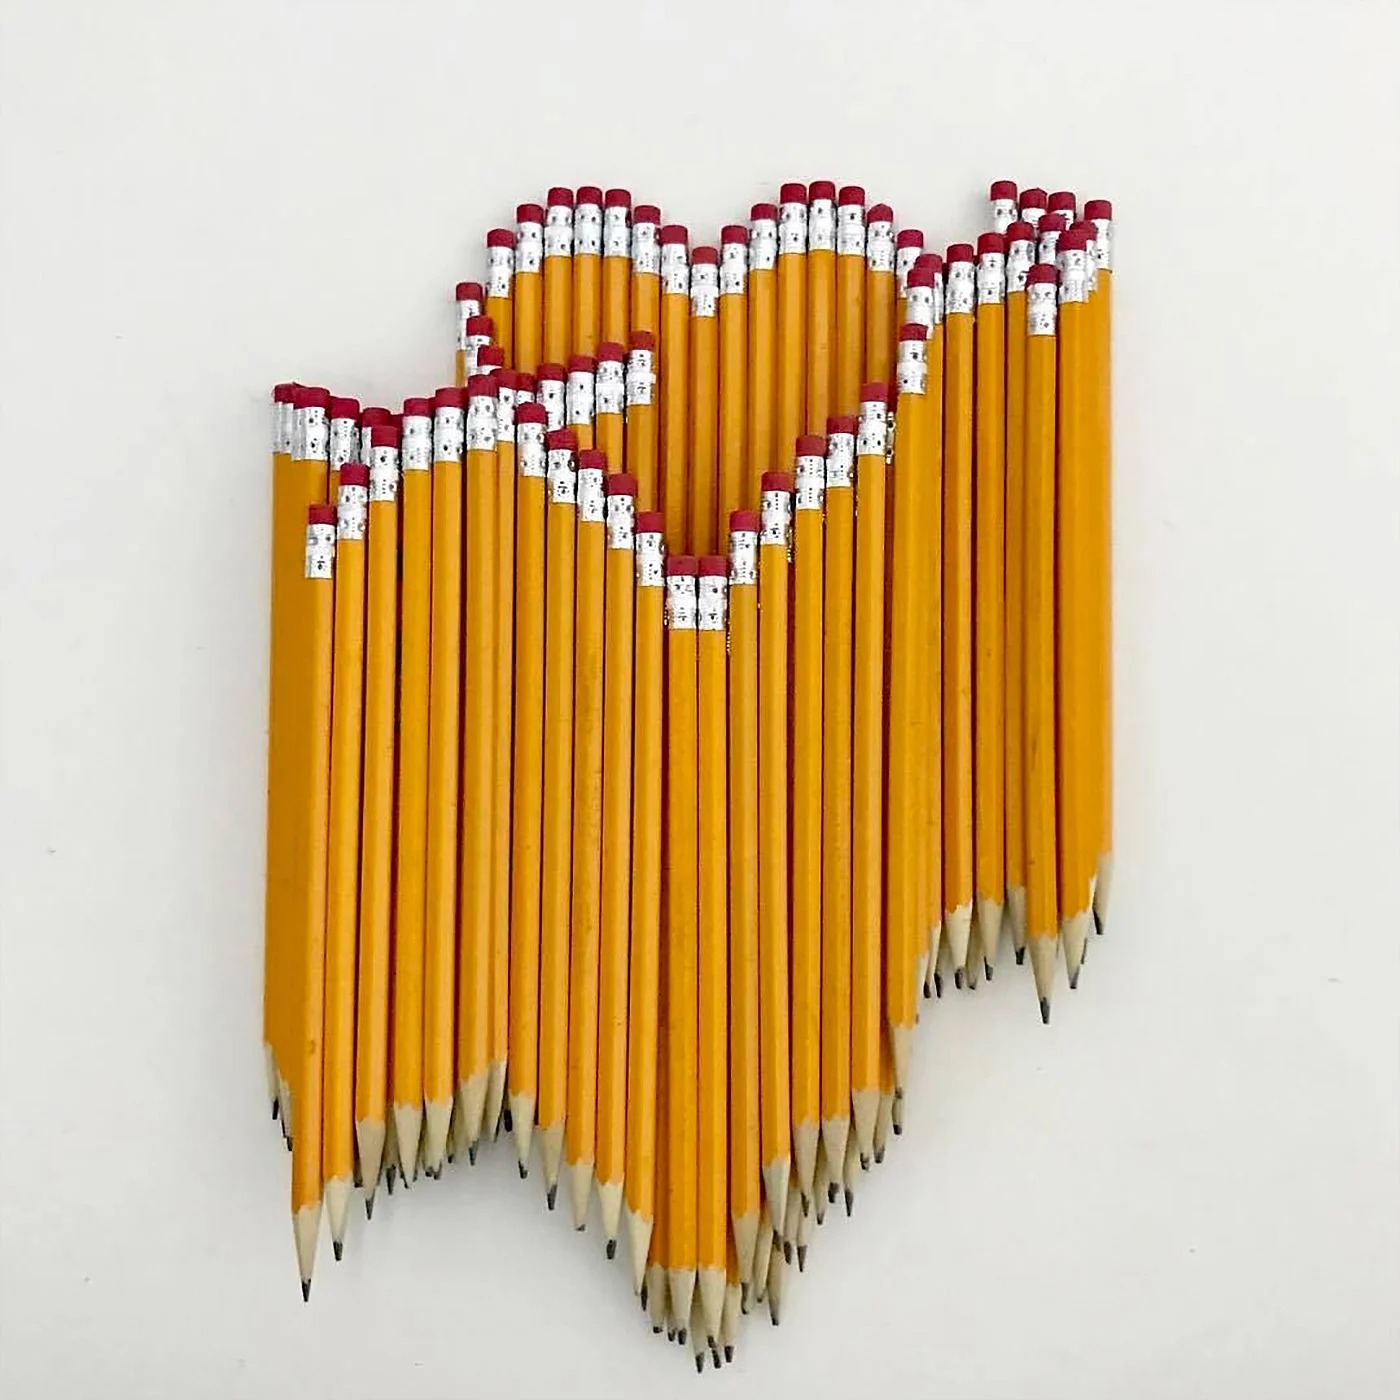 太赞了！Bashir Sultani的铅笔堆叠艺术